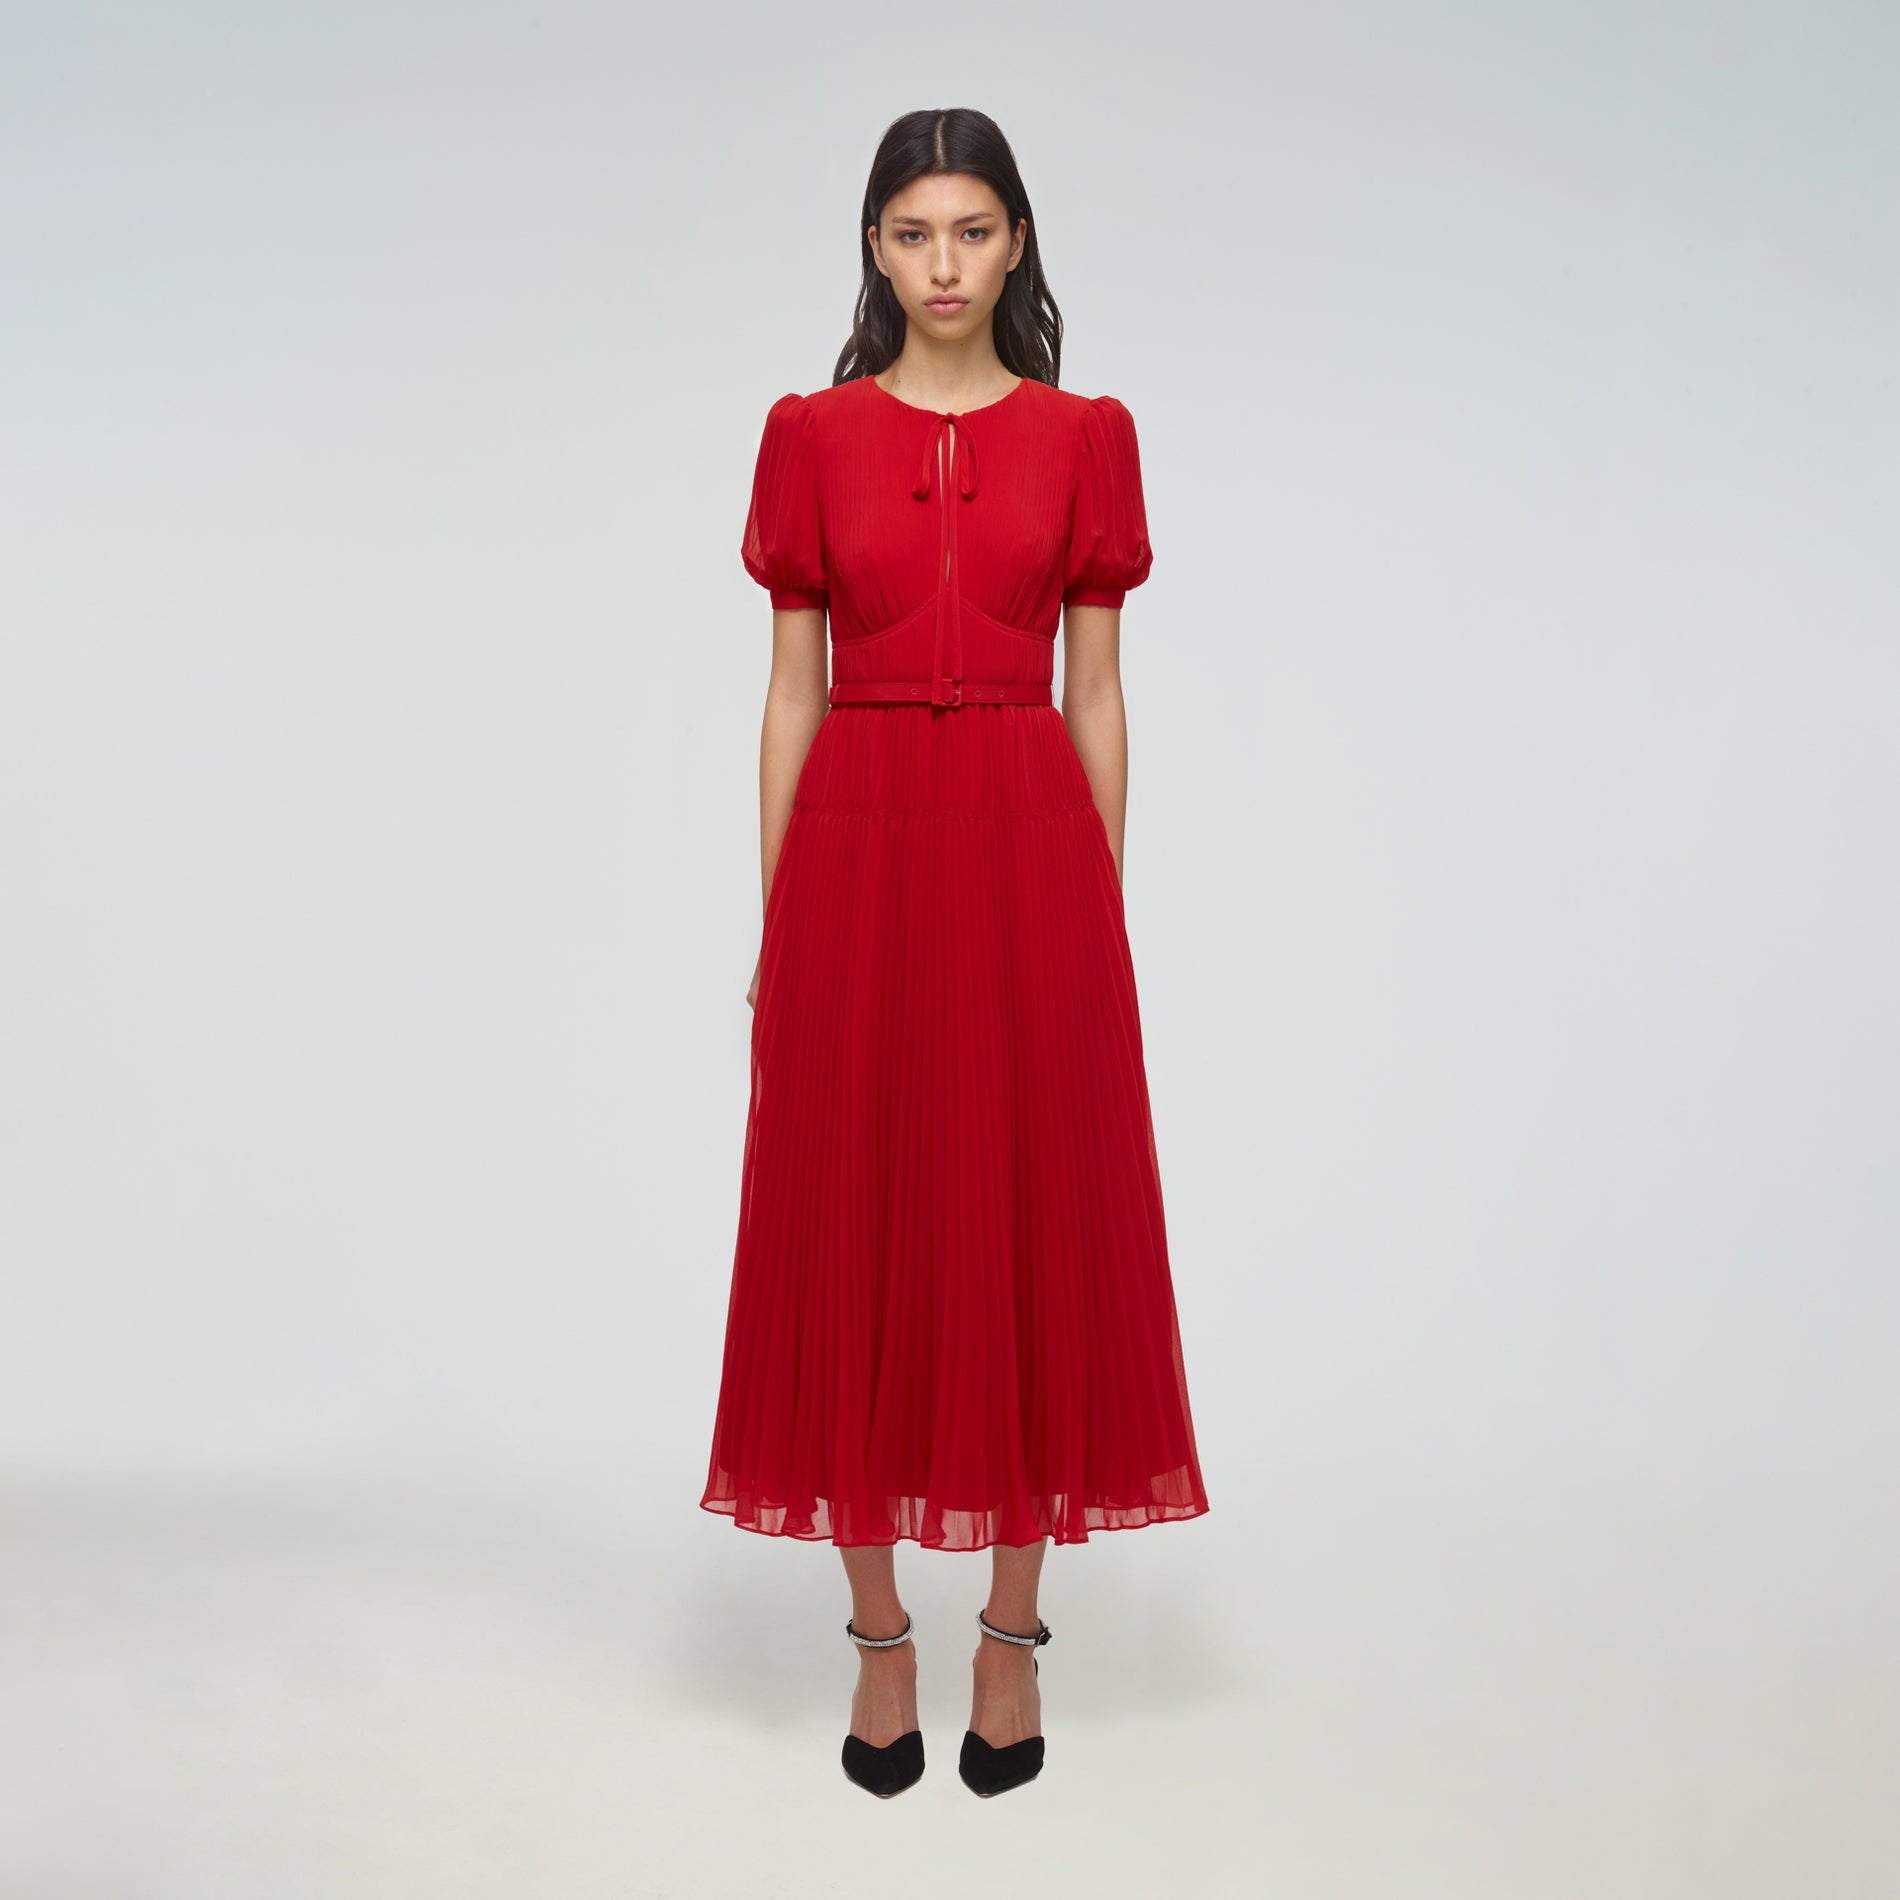 A woman wearing the Red Chiffon Midi Dress